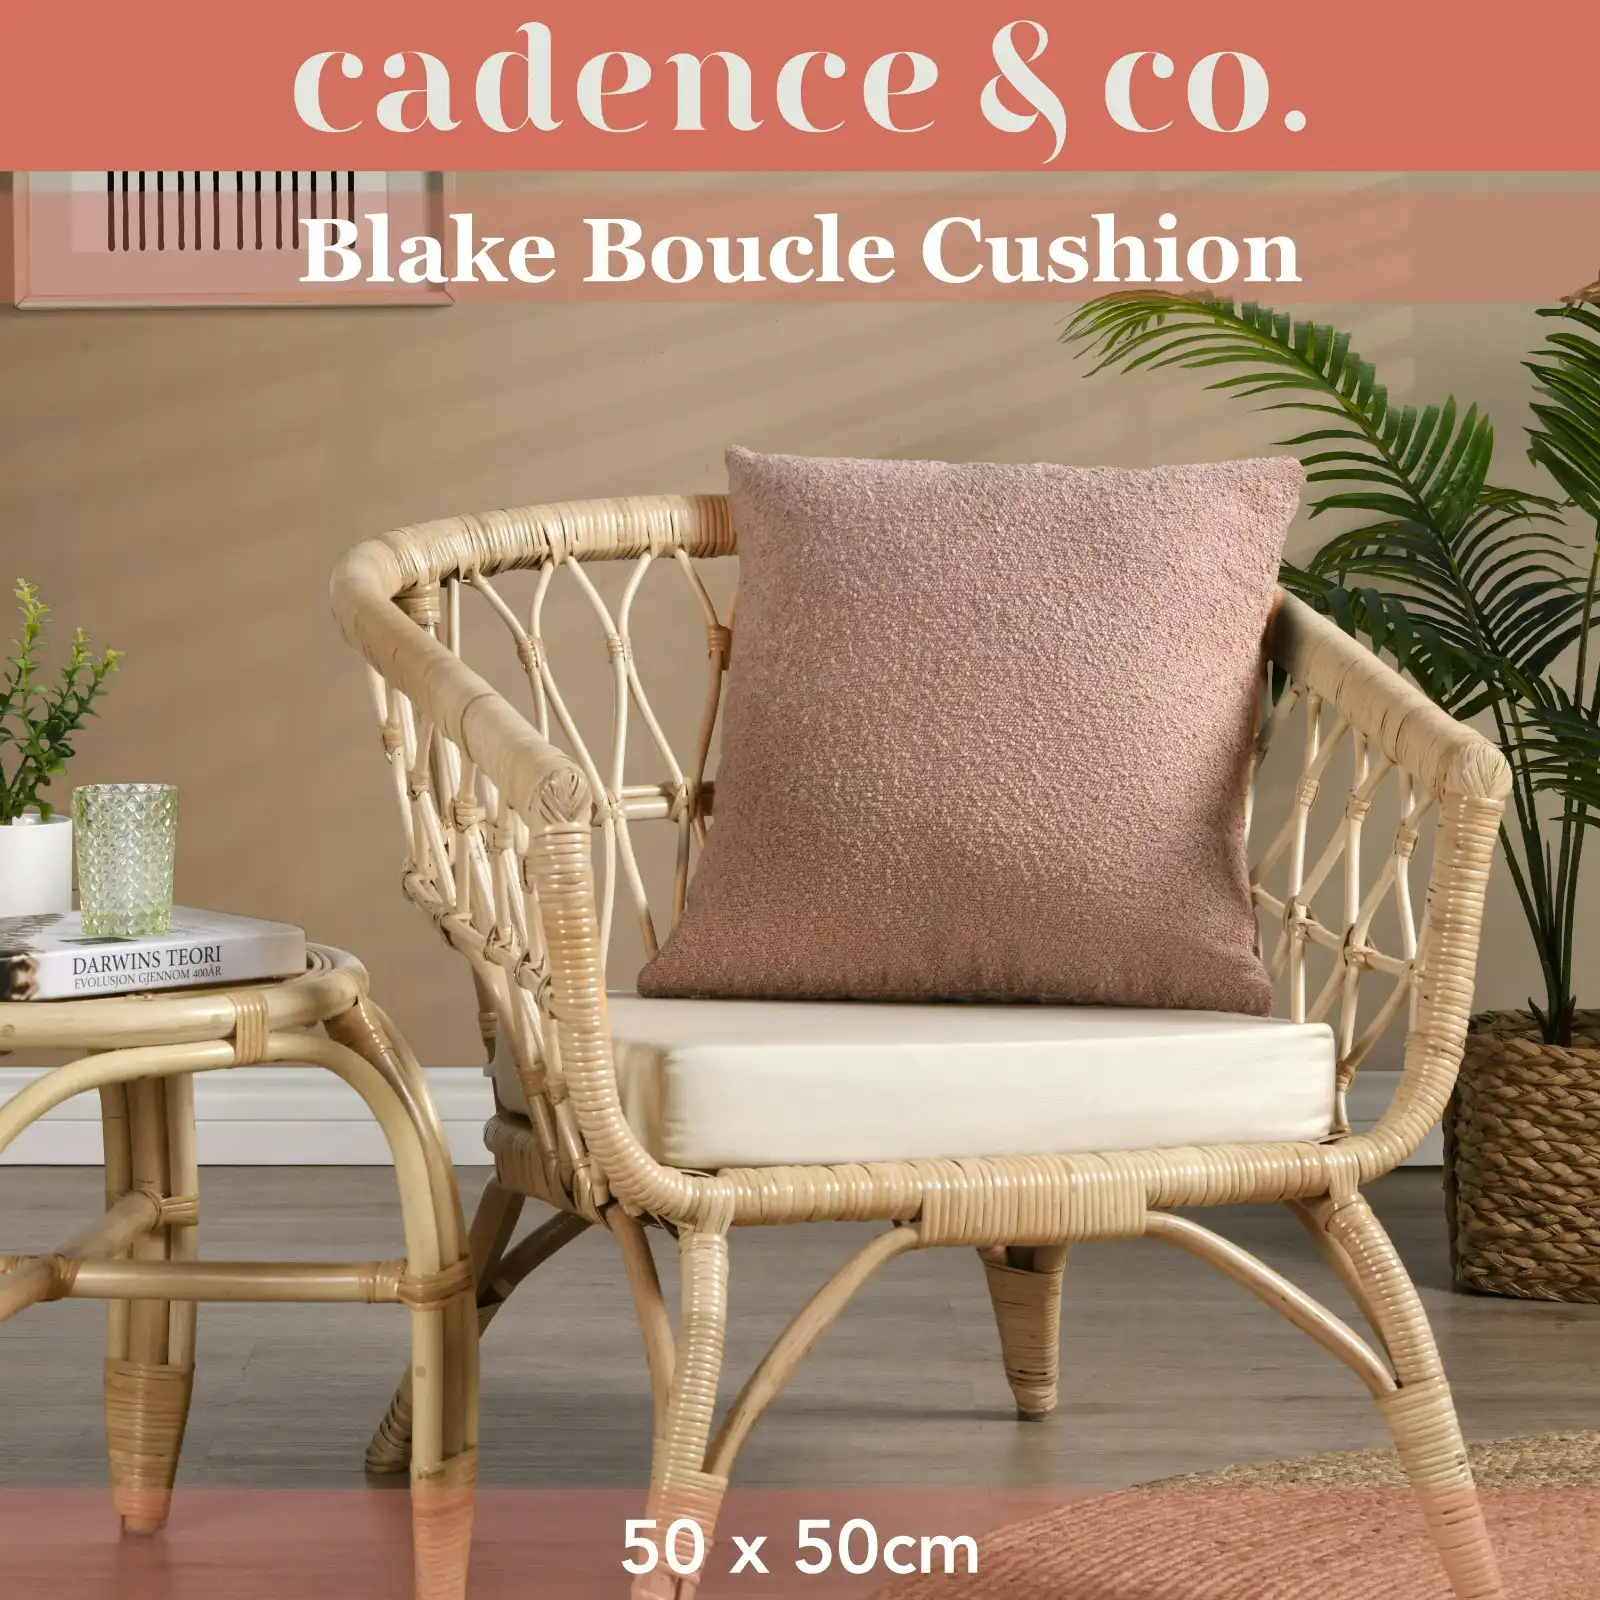 Cadence & Co. Blake Boucle Cushion Blush 50x50cm